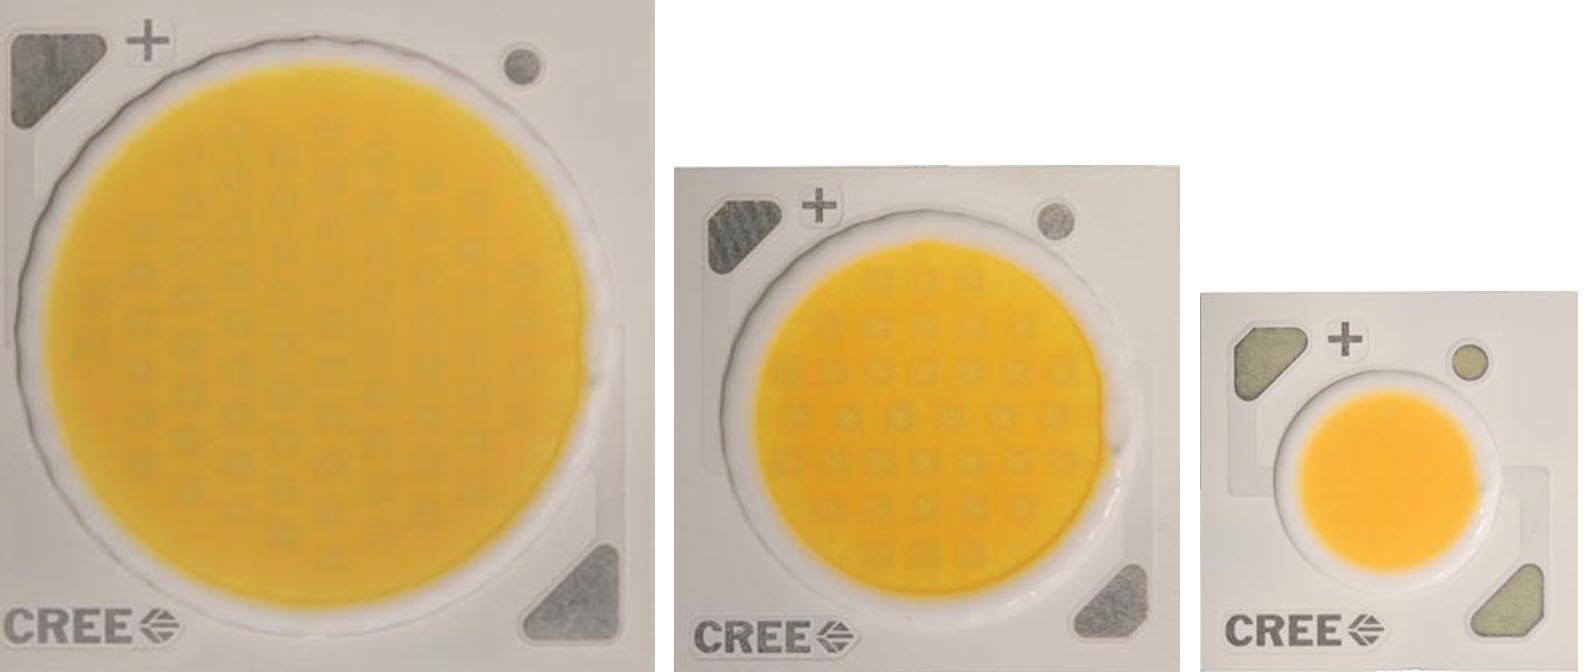 Cree - CXA2590, CXA1850, CXA1310